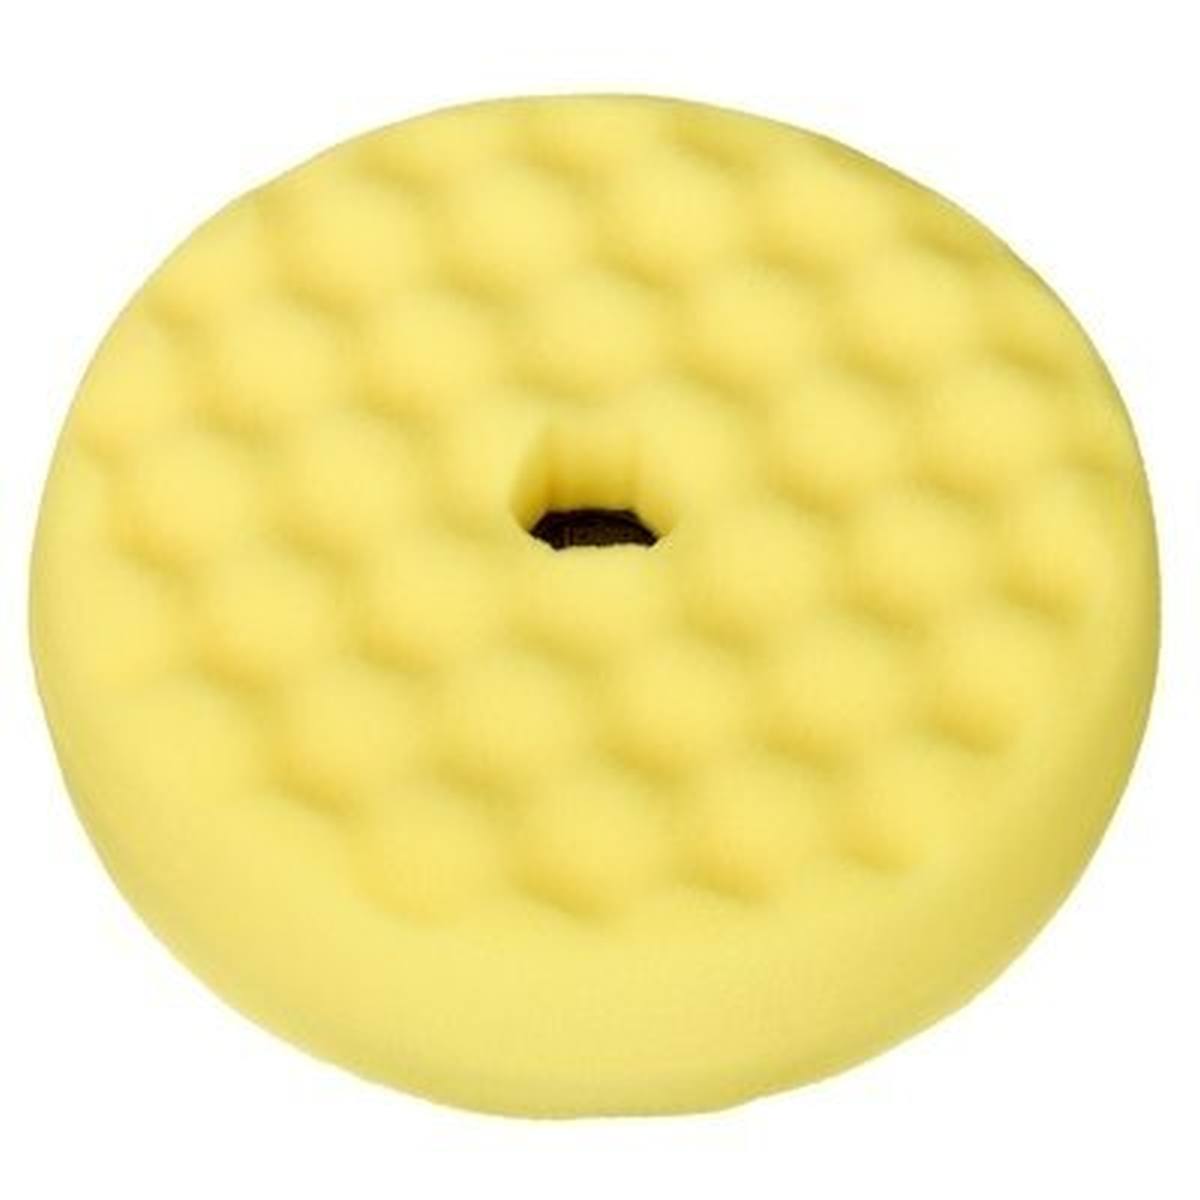 Schiuma per lucidatura 3M Quick Connect Perfect-it III, con nastri su entrambi i lati, giallo, 150 mm #50879